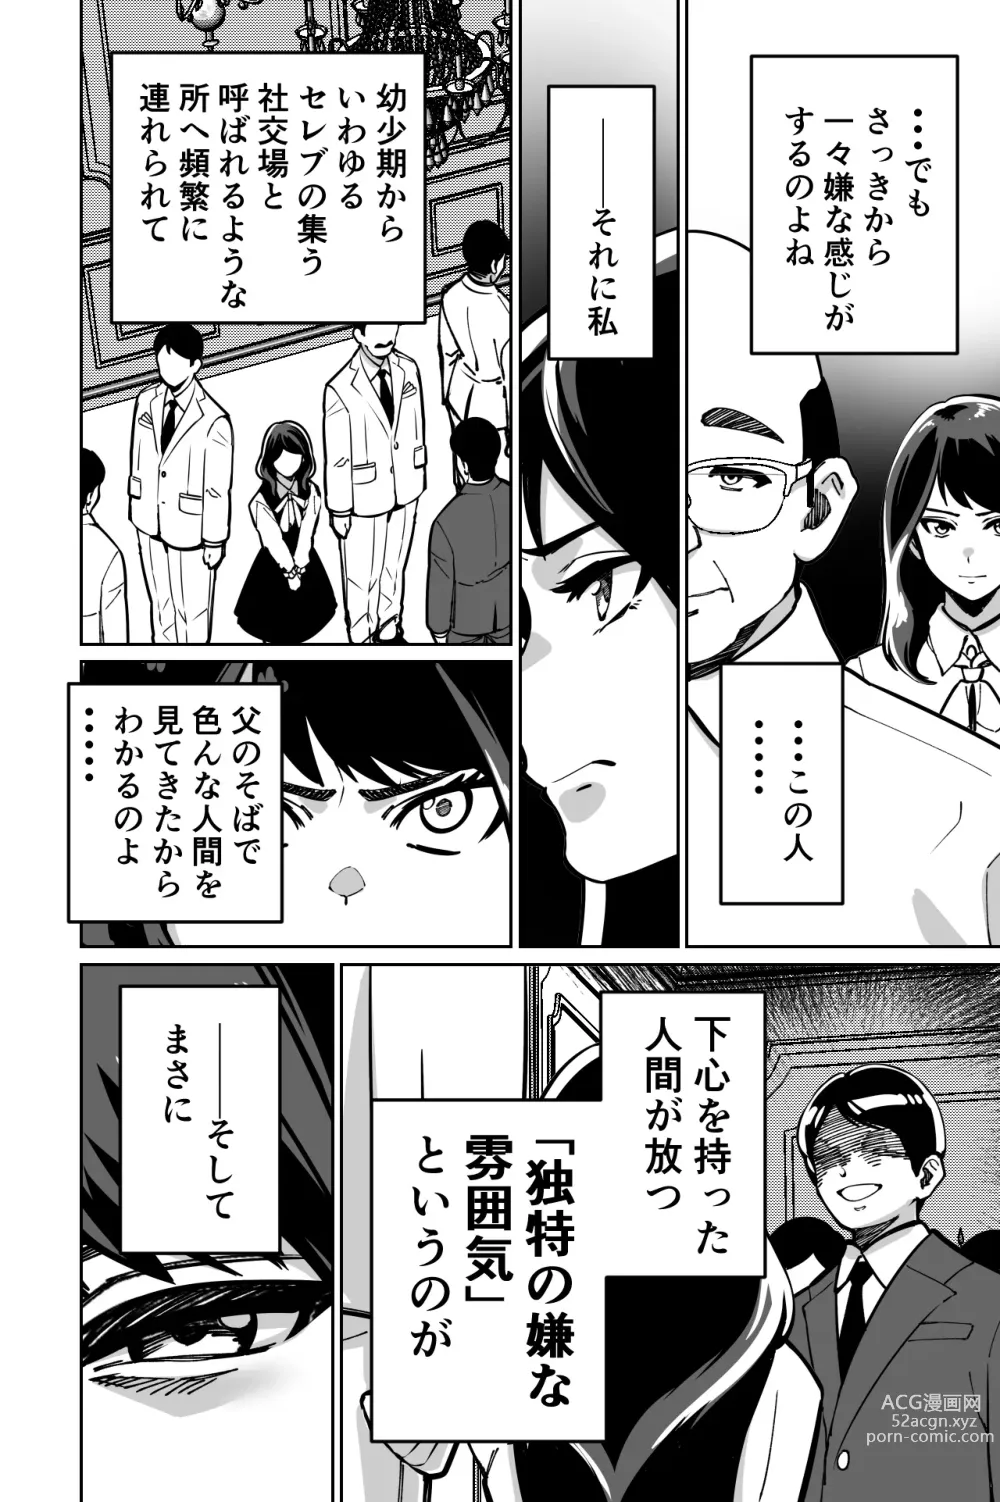 Page 10 of doujinshi Minpaku ~Ojou-sama-tachi wa Minpaku Keieisha no Wana ni Ochiru~